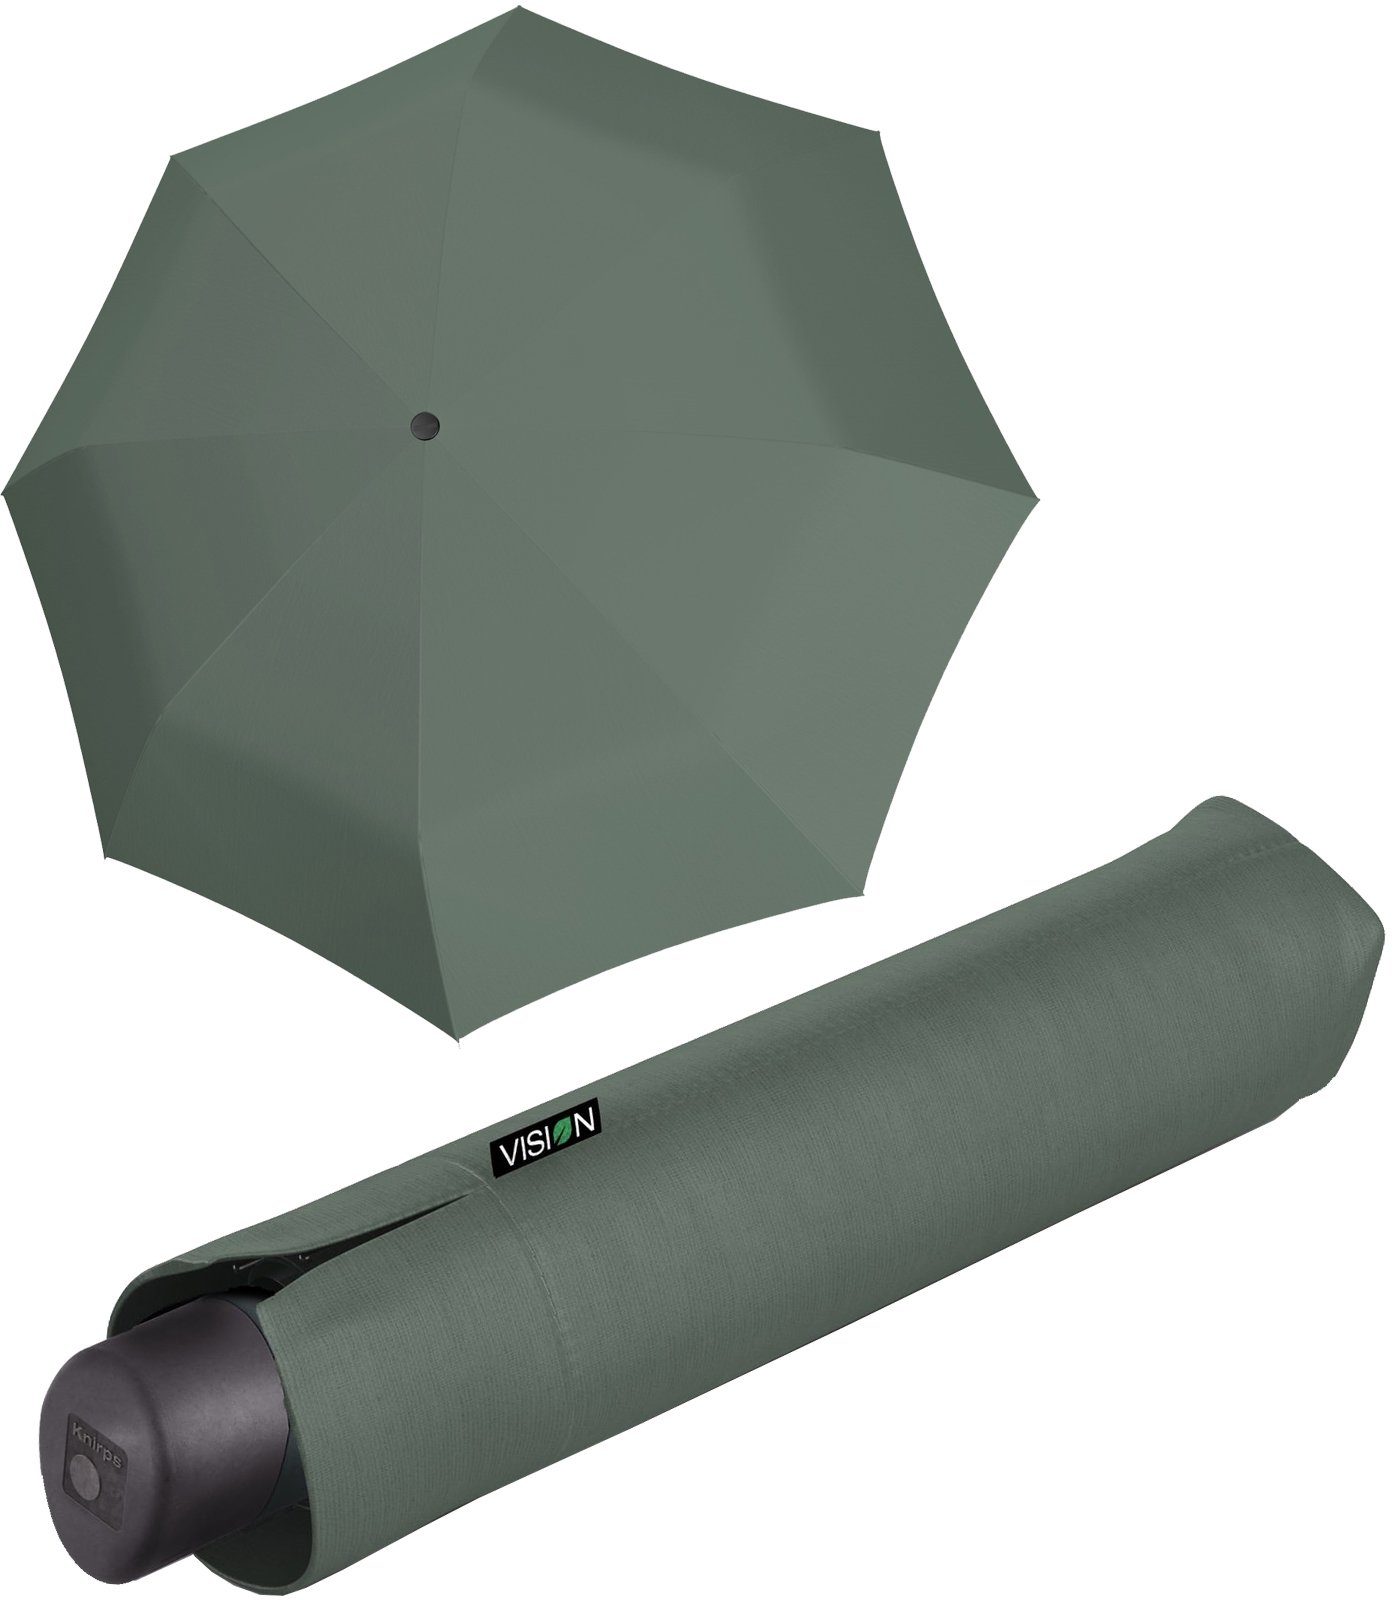 Knirps® Taschenregenschirm Vision Manual - nachhaltiger Damen-Regenschirm, recyceltes PET, PFC-frei beschichtet - plant grün